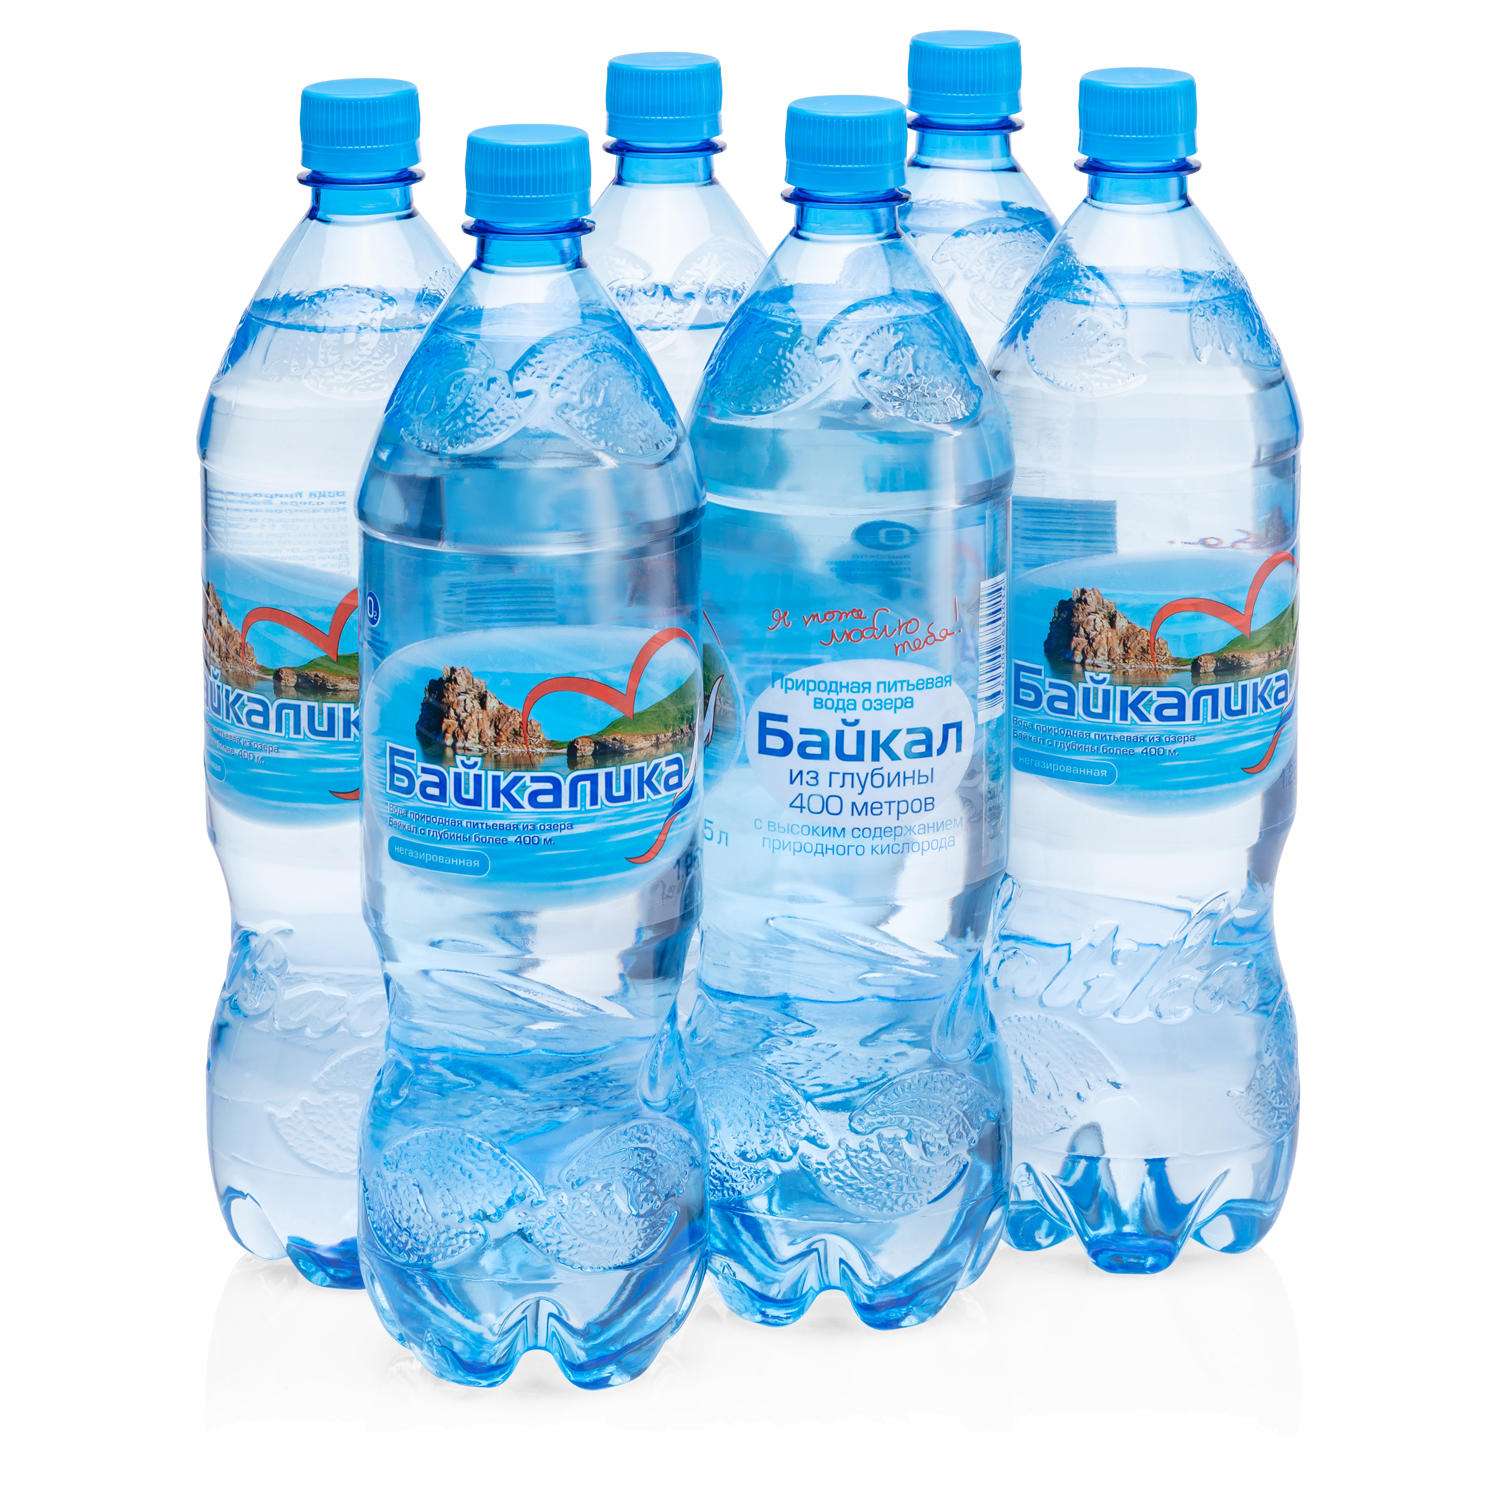 Вода питьевая БАЙКАЛИКА Набор 6 бутылок по 1.25л природная глубинная негазированная - фото 1